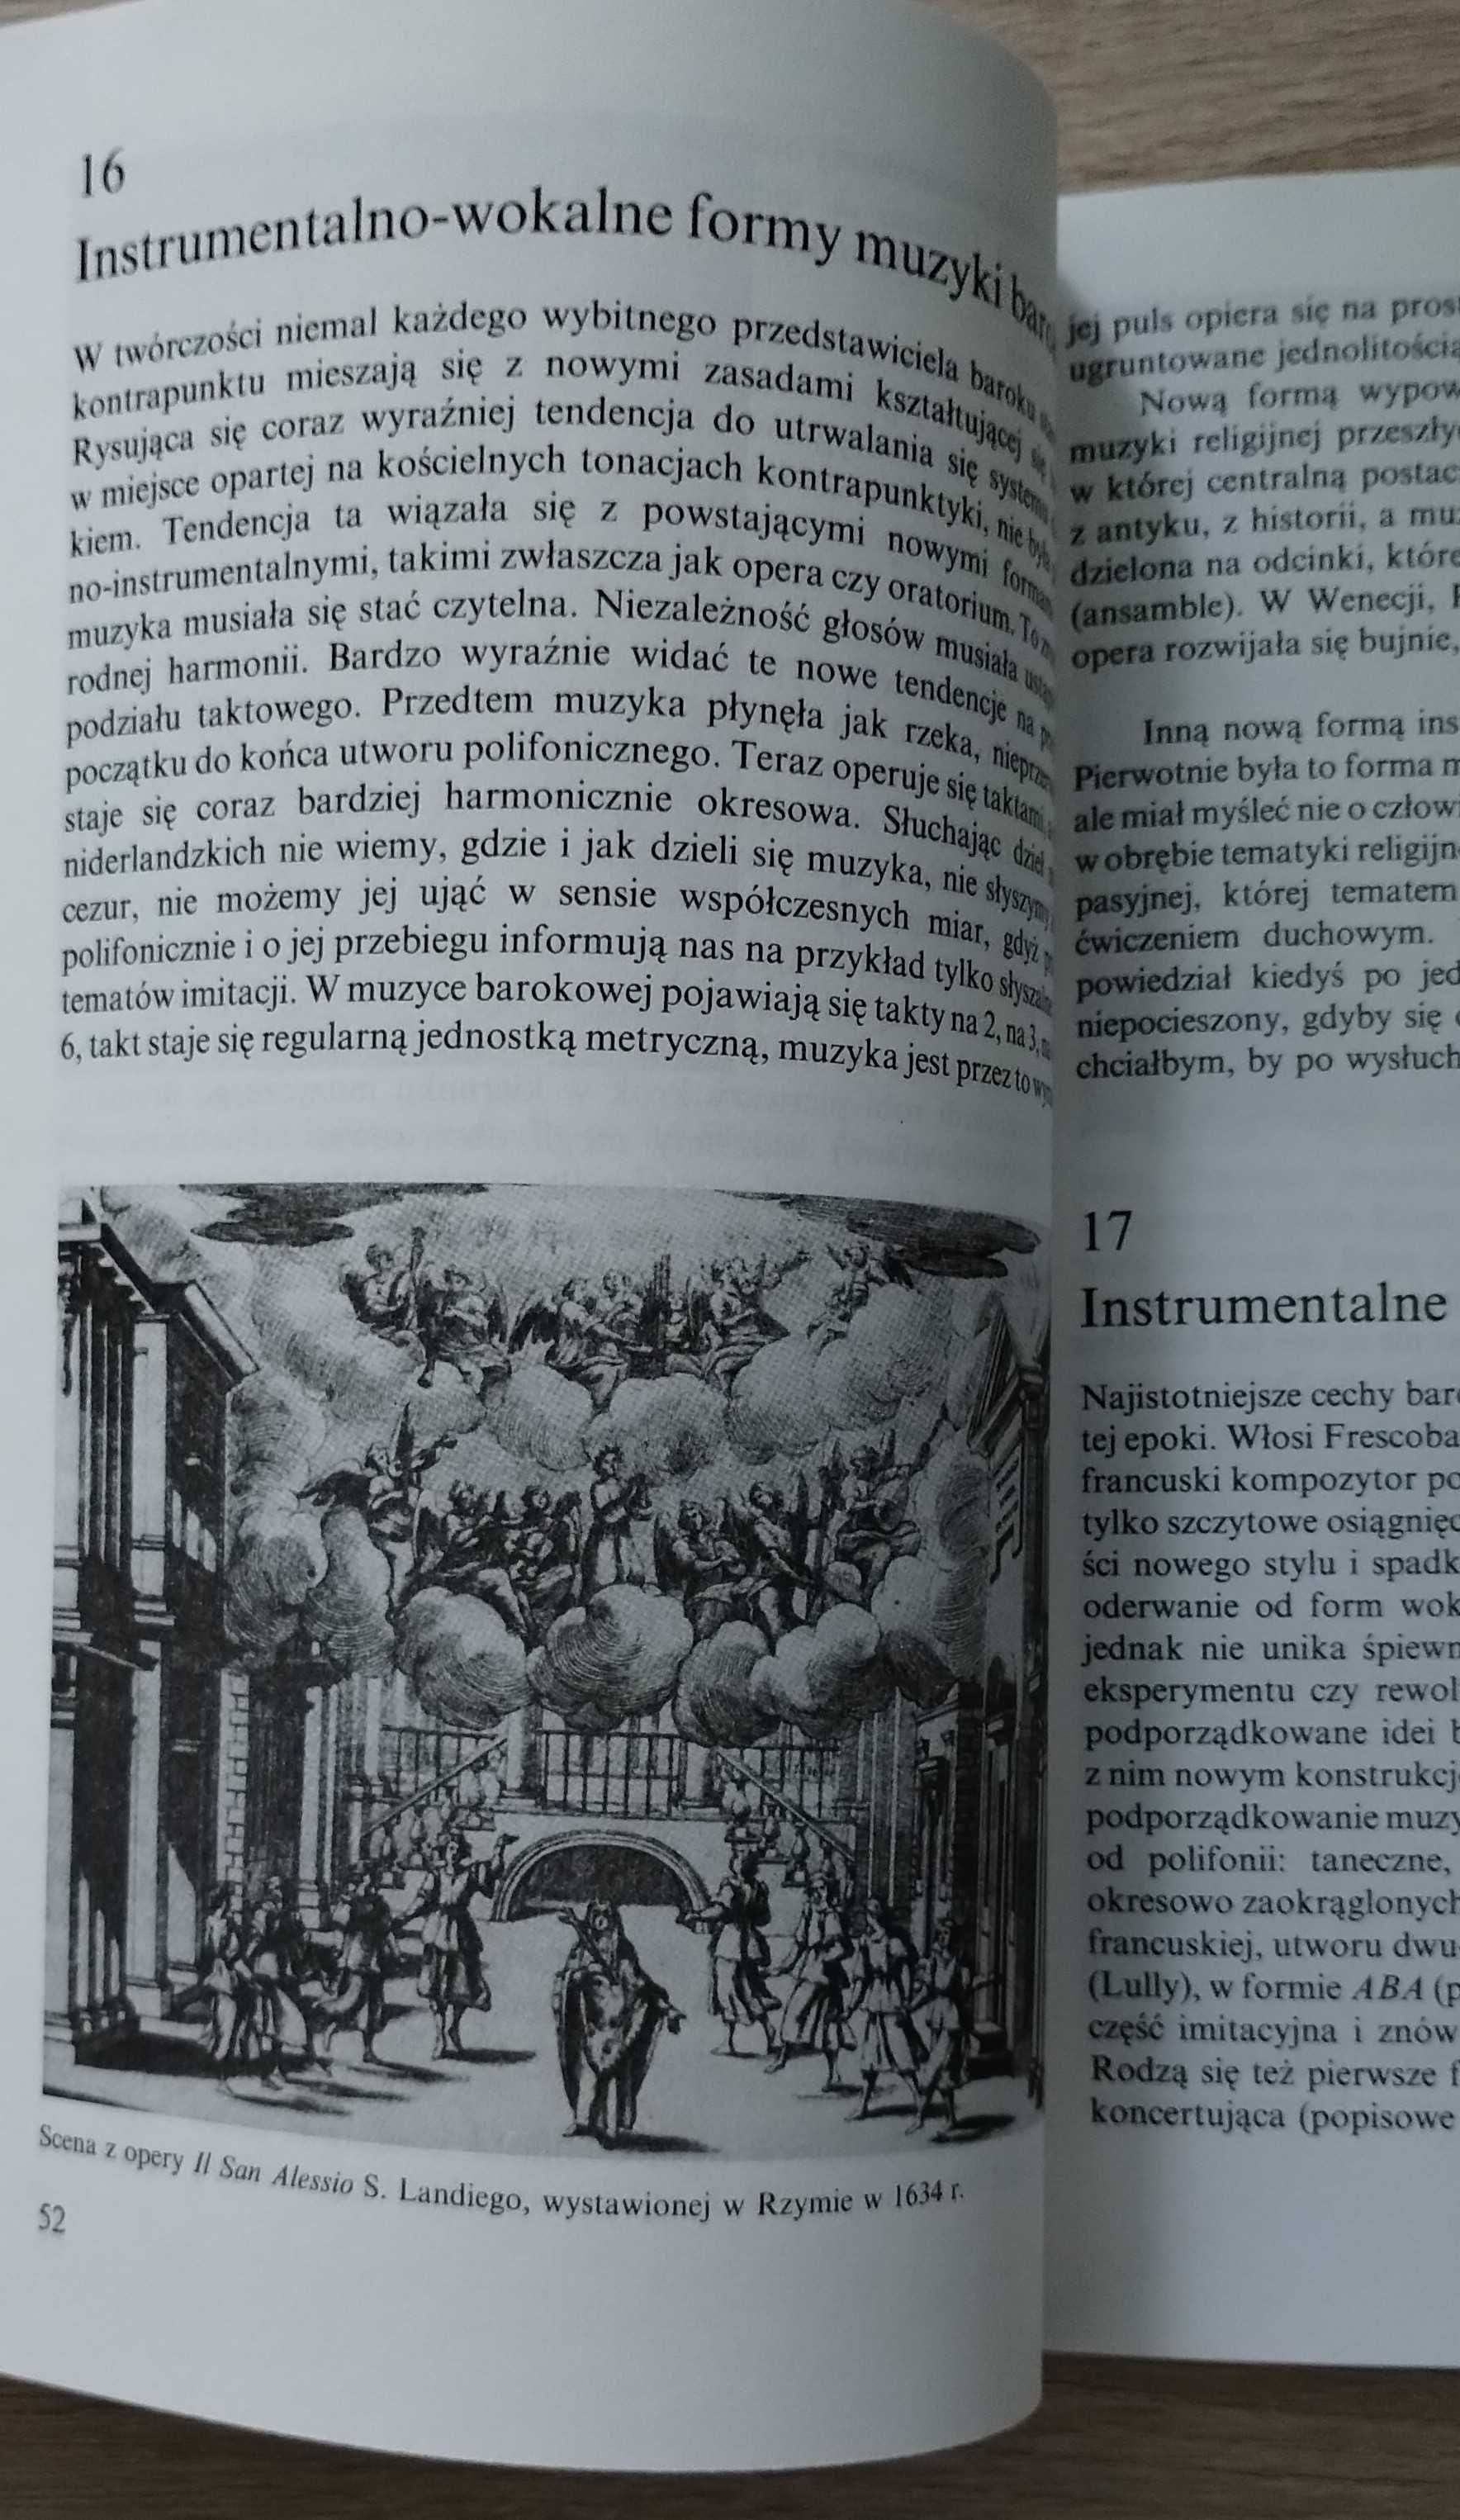 "Dzieje kultury muzycznej. Muzyka. Podręcznik dla szkół średnich" 1997